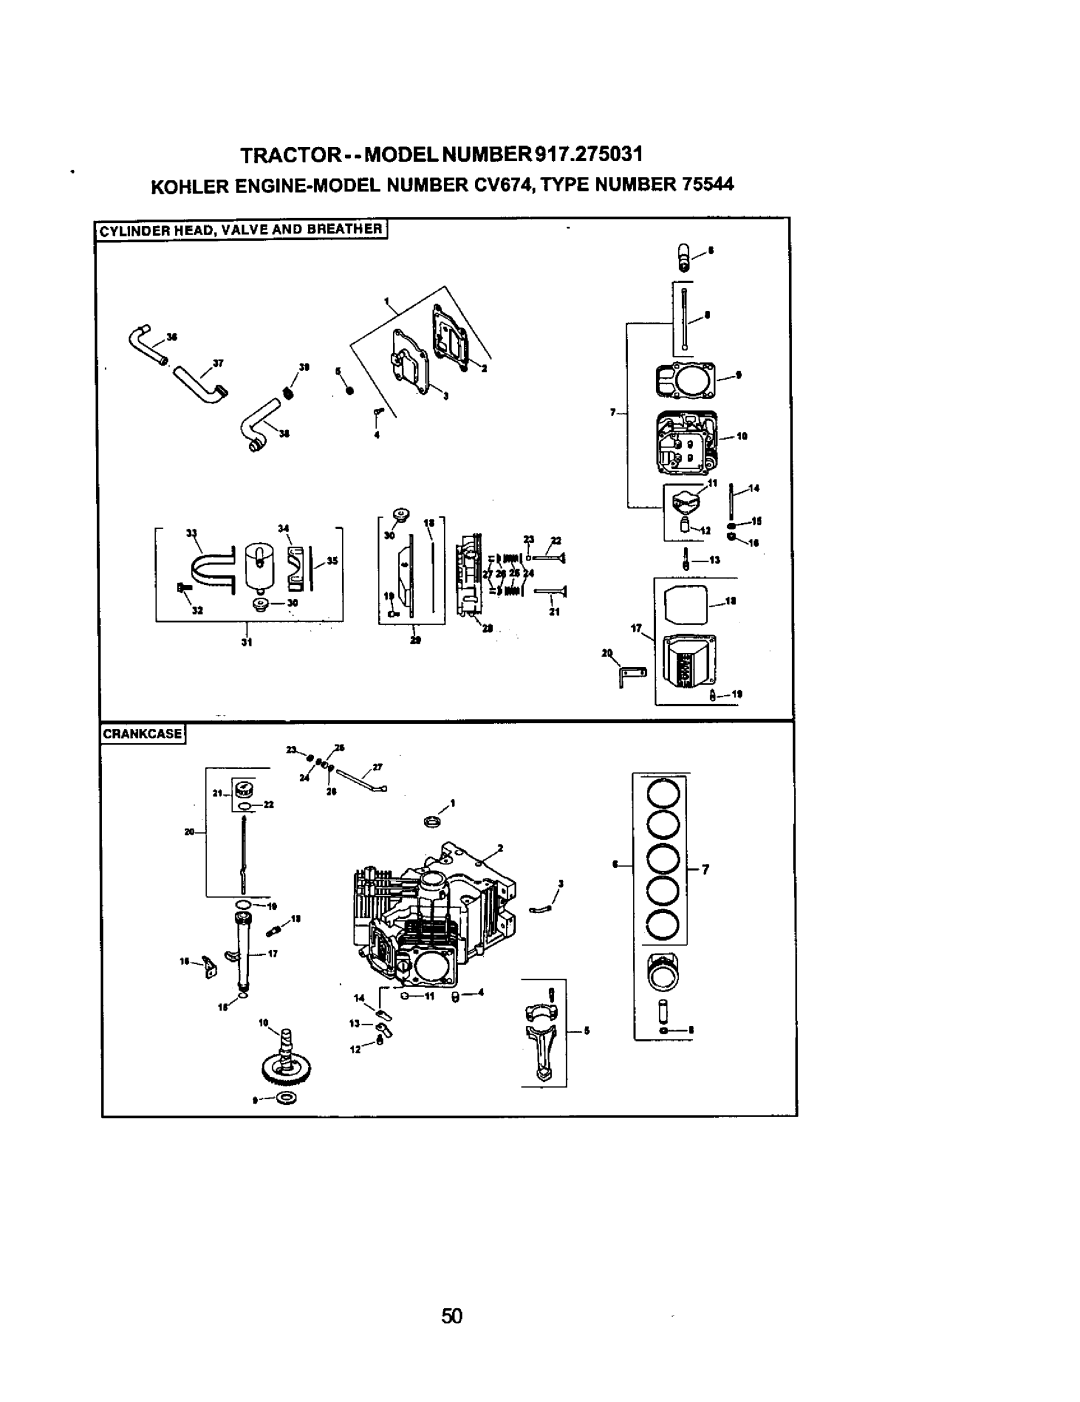 Craftsman 917.275031 owner manual XI-7, Tractor- - Model Nu Mber, KOHLER ENGINE-MODELNUMBER CV674, TYPE NUMBER, o-..16 